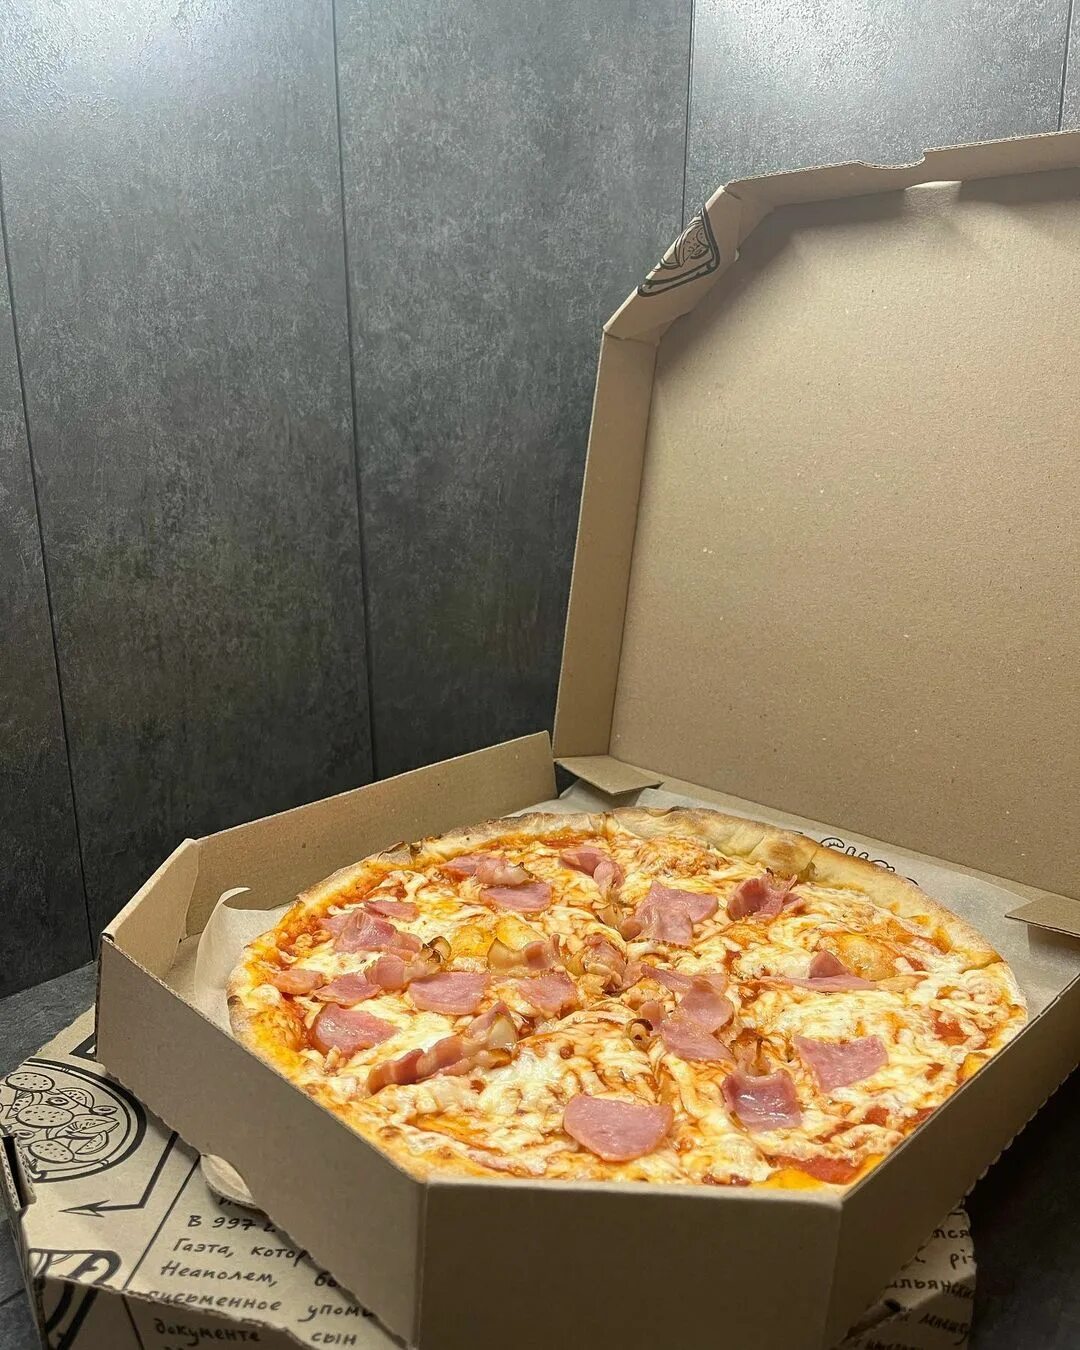 эй наконец то я могу попробовать пиццу путтанеска с соусом фото 91